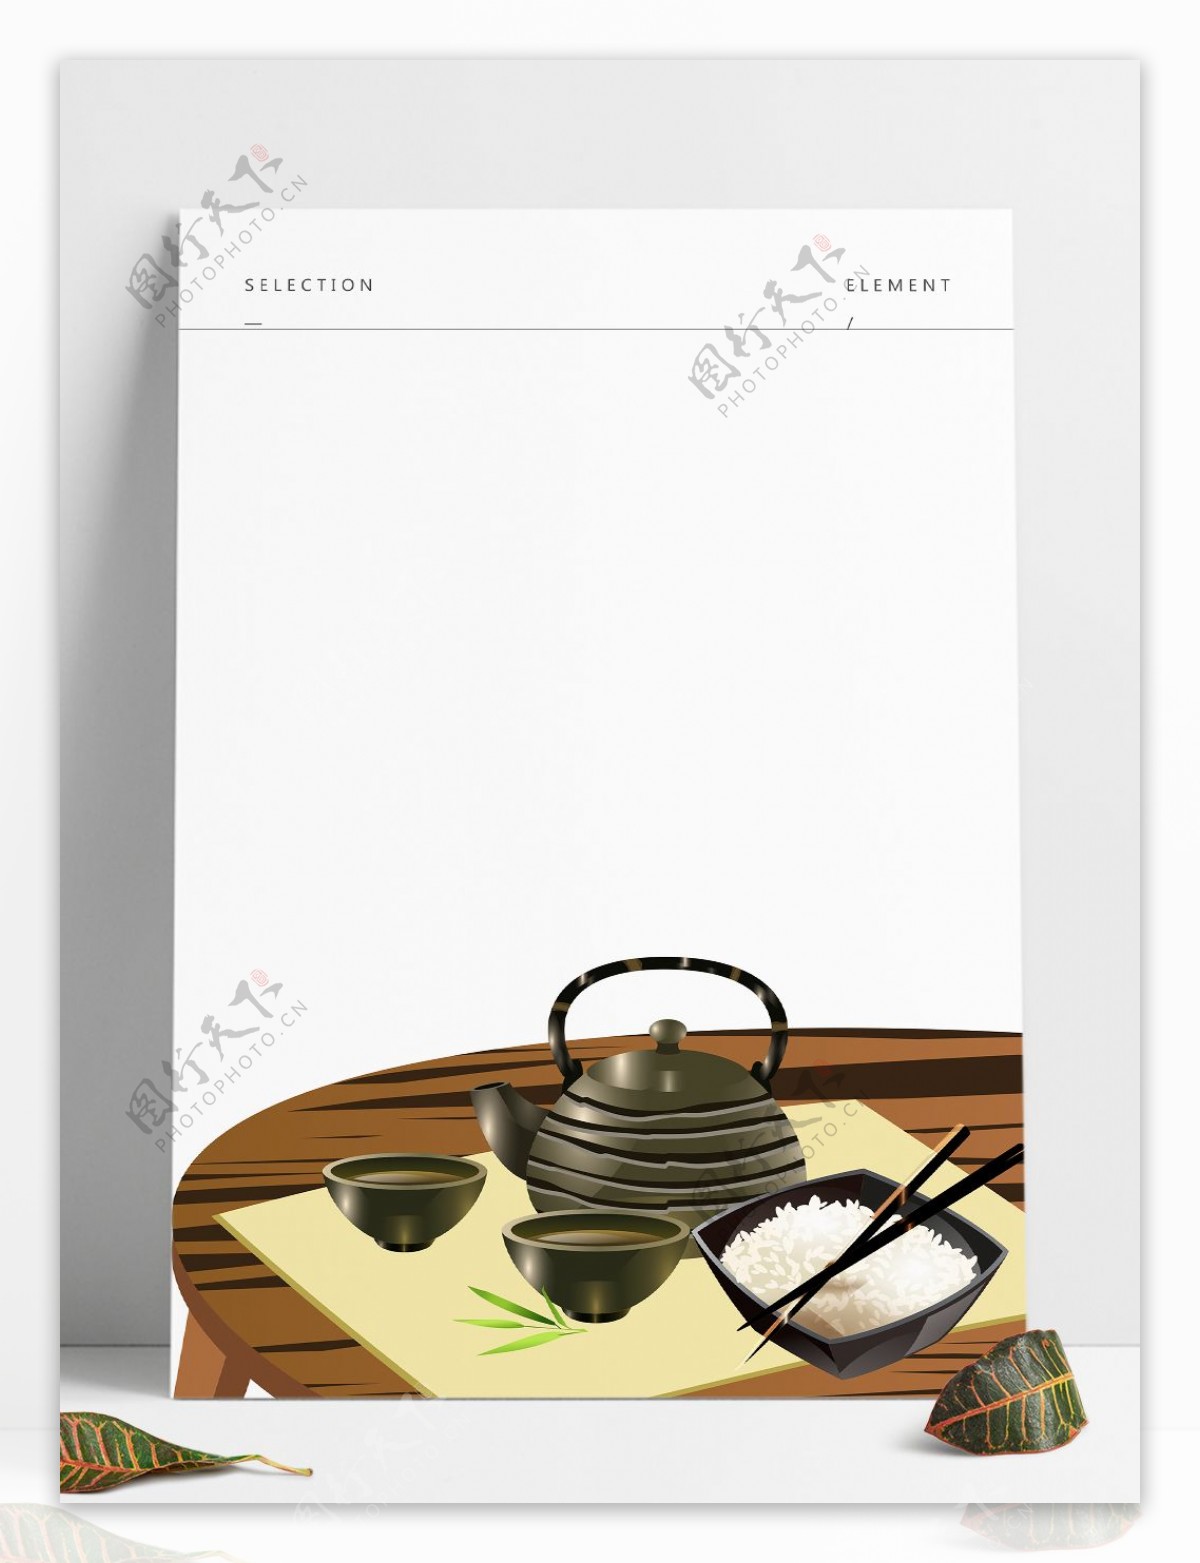 中国风桌子碗茶壶饭筷子组合